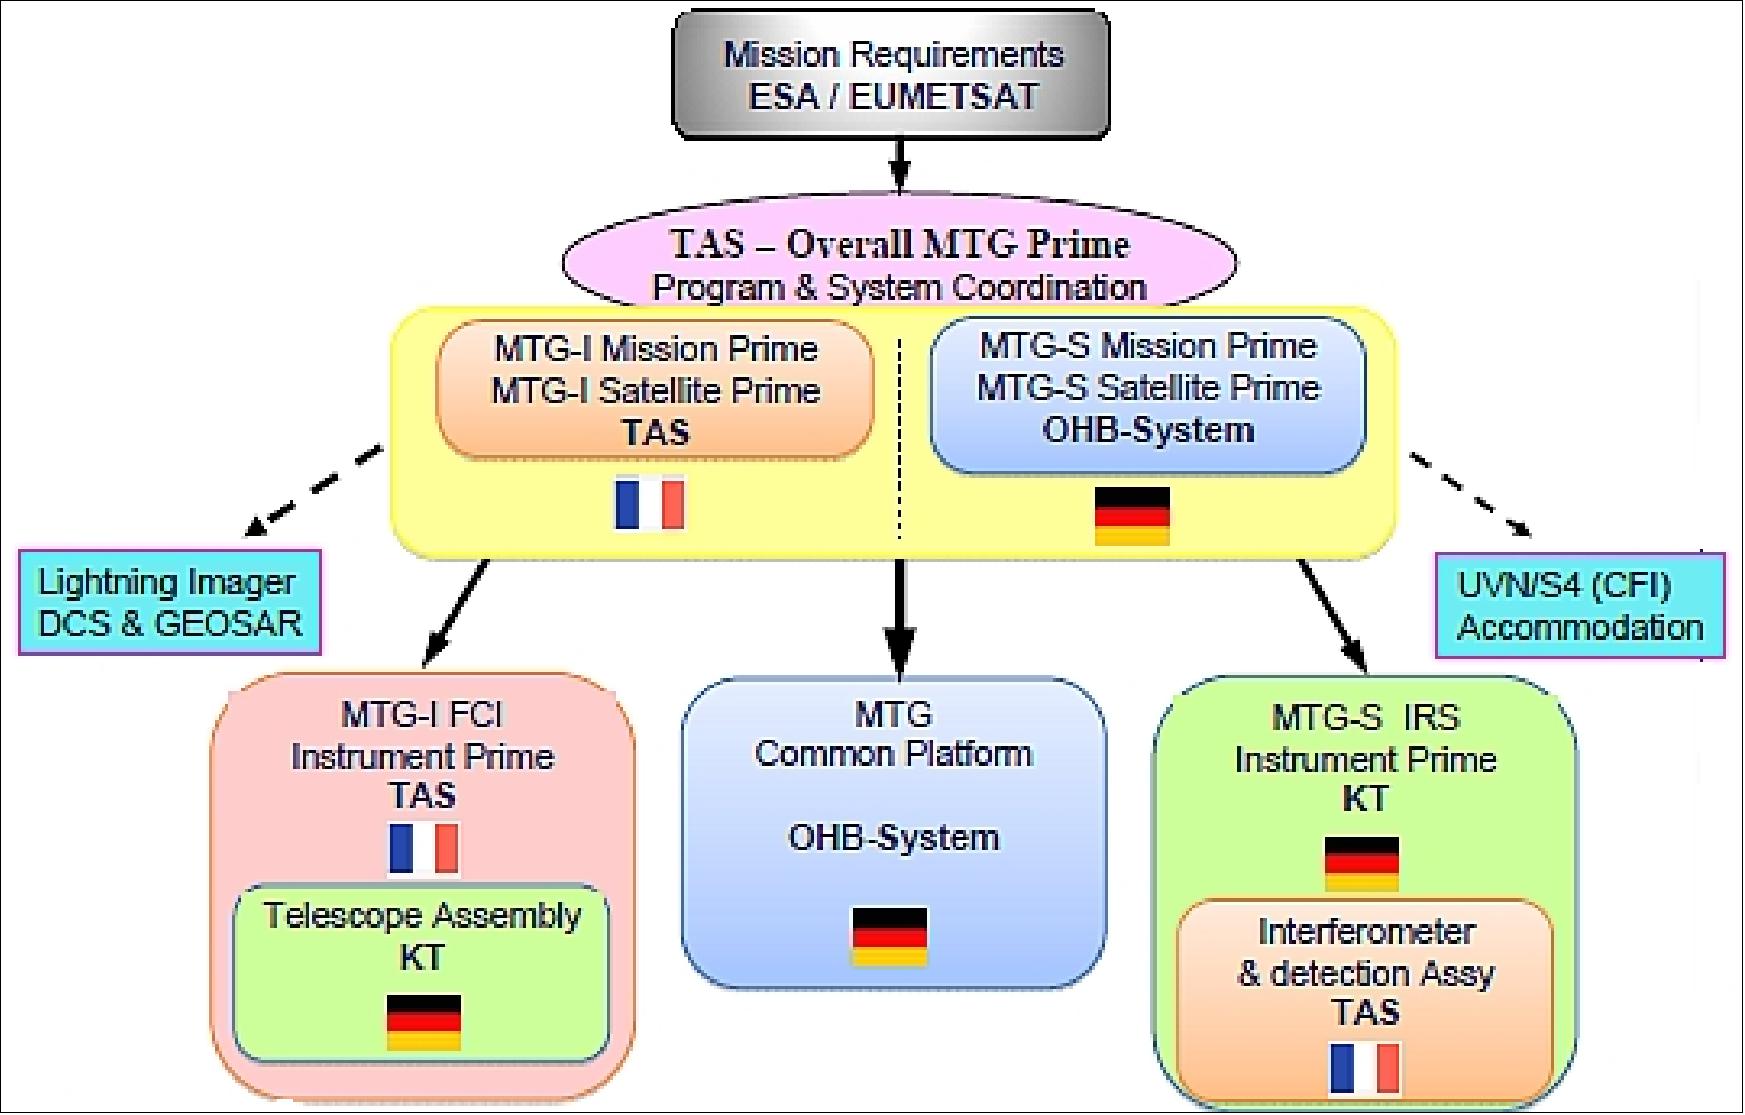 Figure 4: Overview of the MTG industrial core team (image credit: ESA, EUMETSAT, Ref. 18)